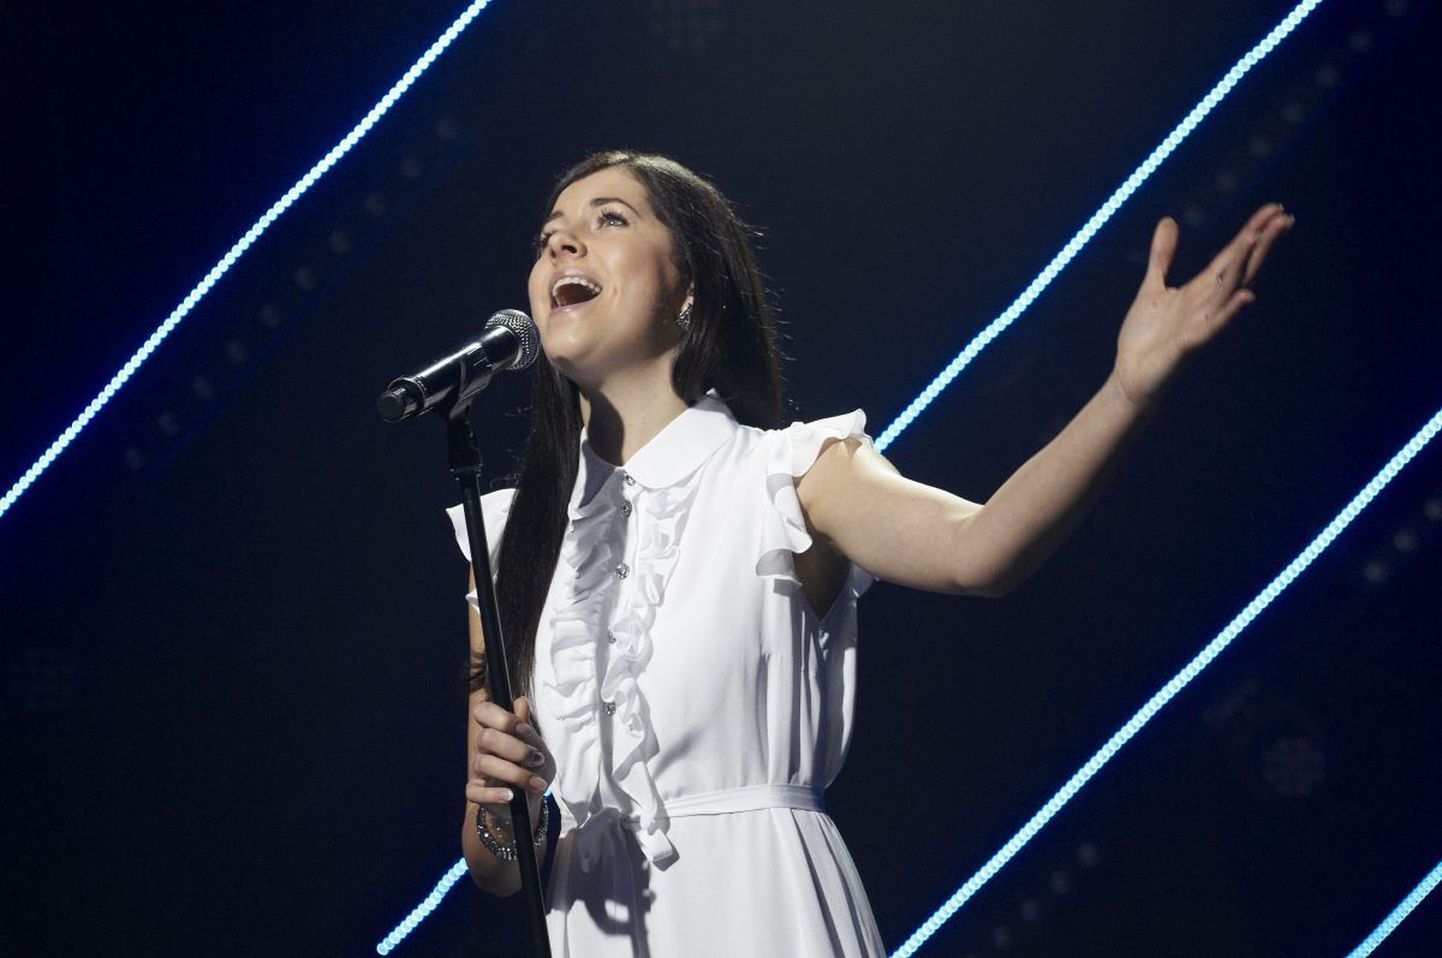 «Eesti laul 2013» võitja Birgit Õigemeel esitab oma võidulugu 14. mail Eurovisiooni tänavusel lauluvõistlusel Malmös.